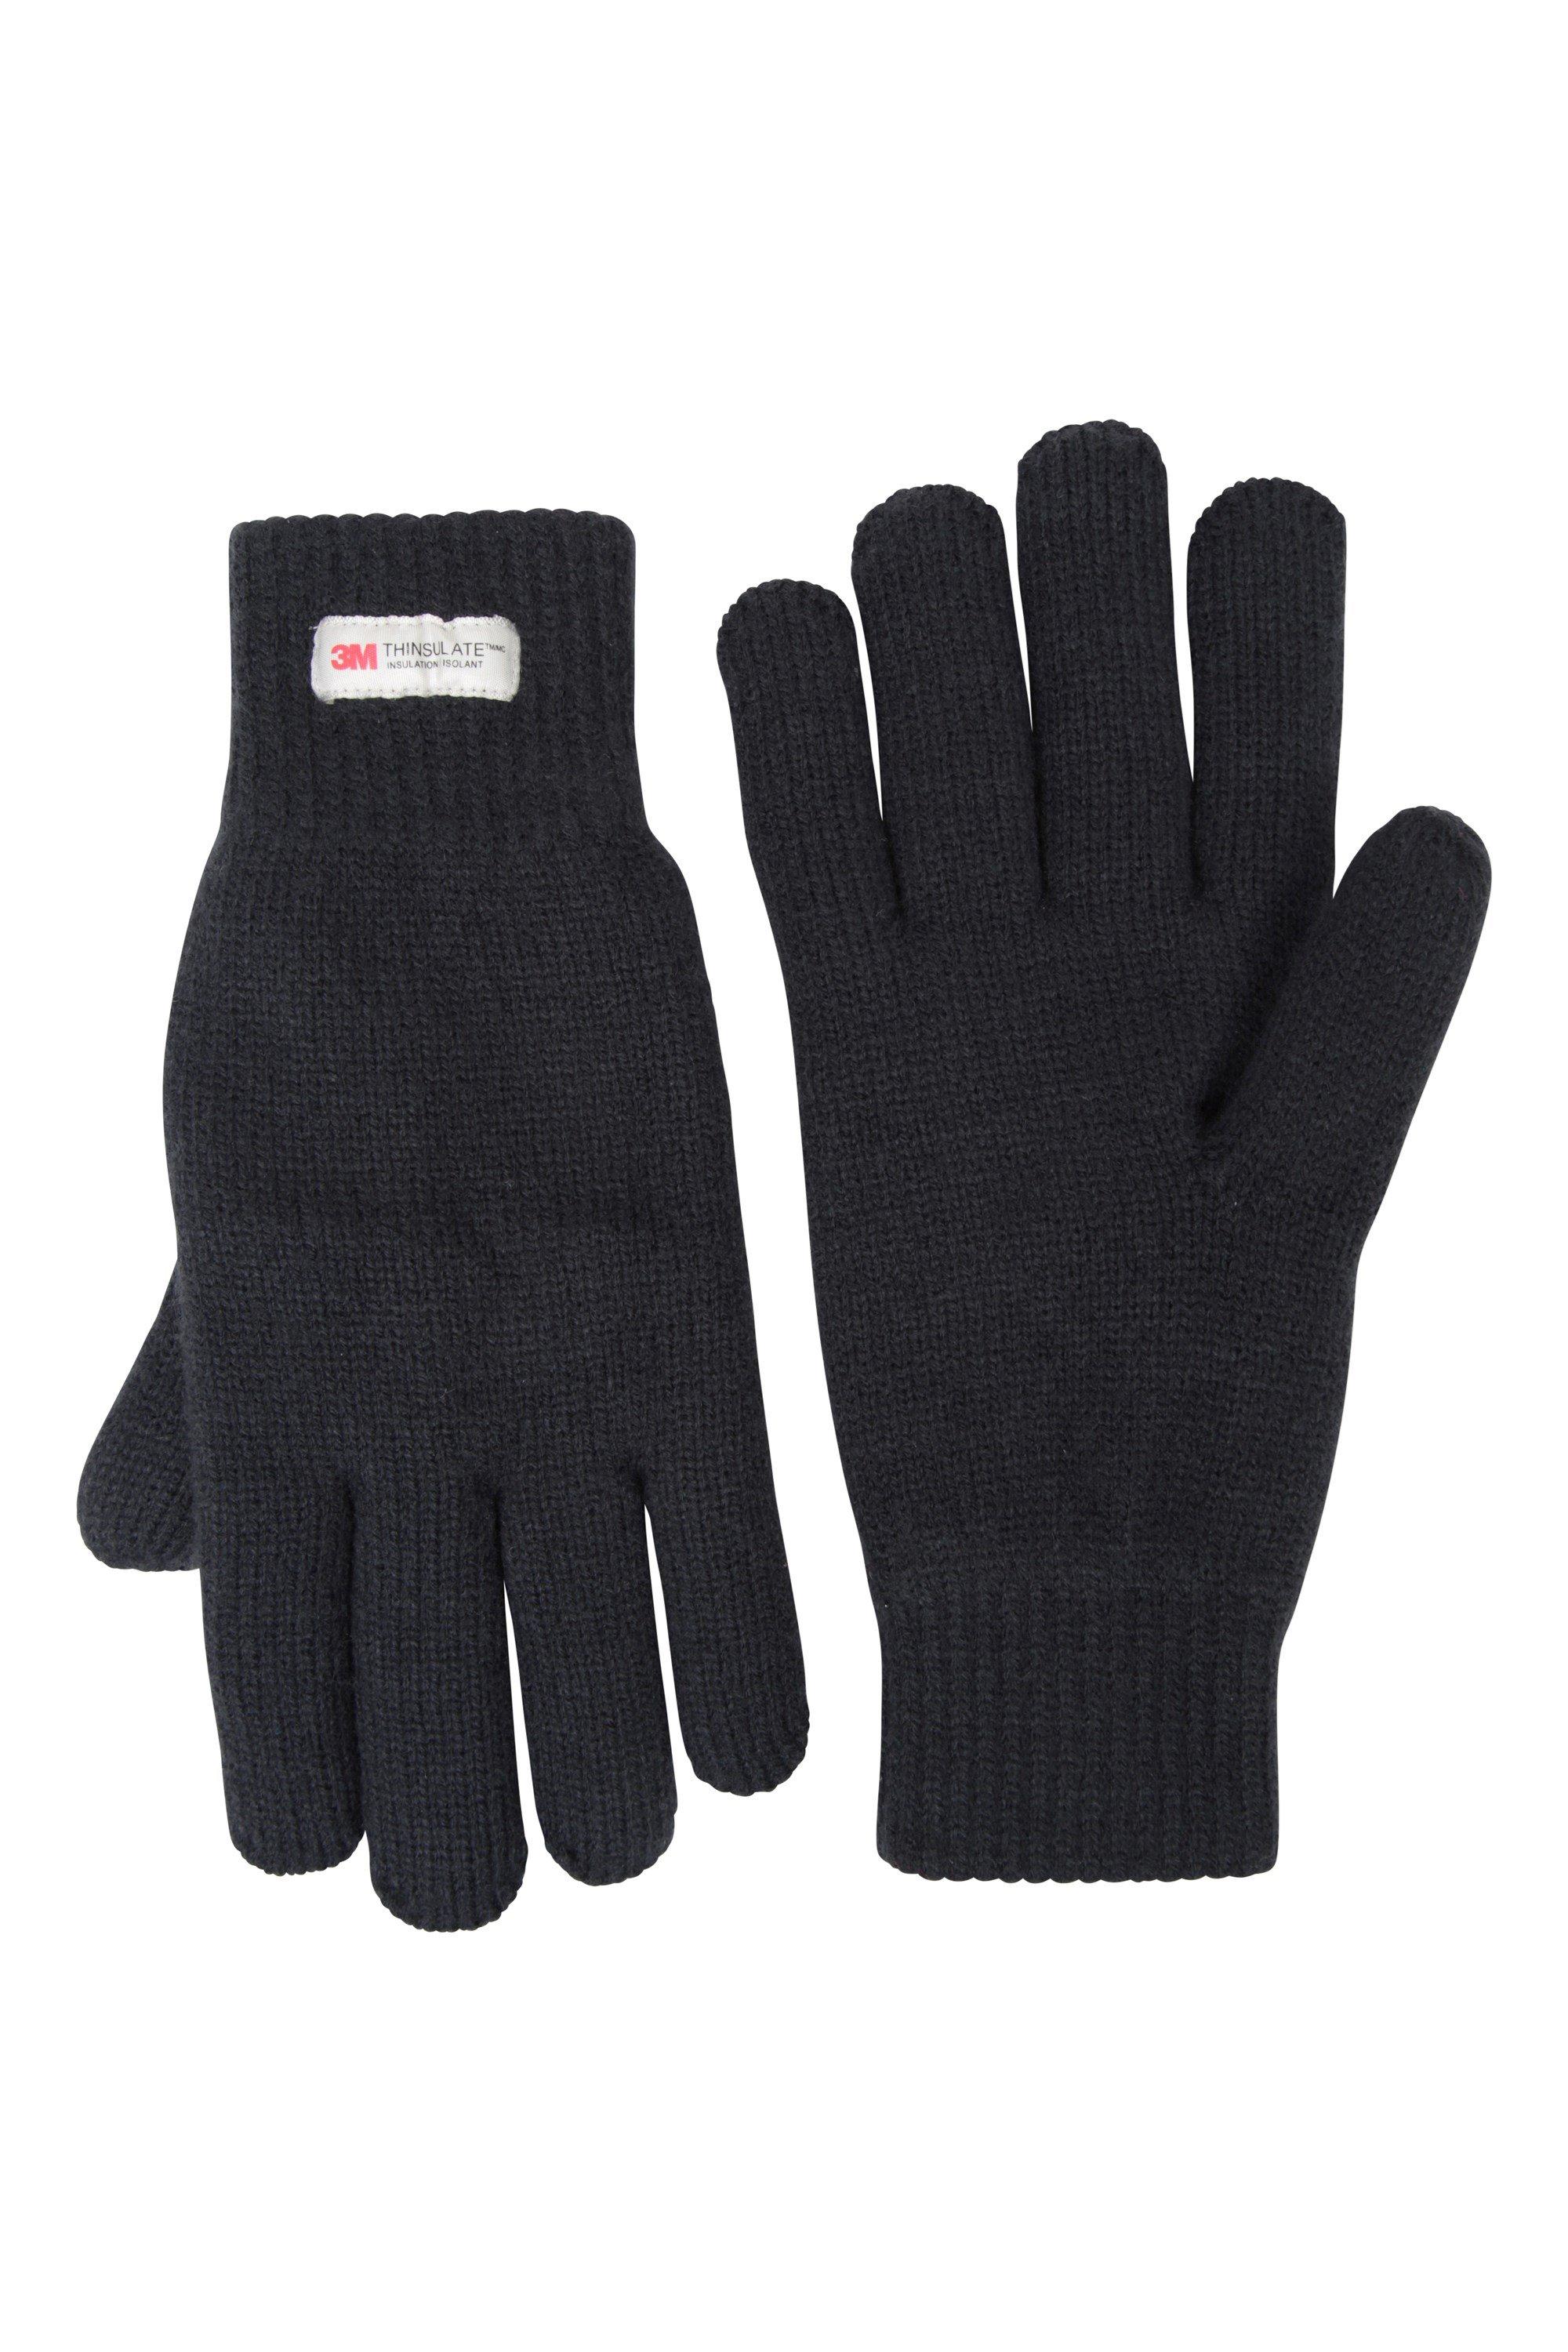 Thinsulate Gloves Трикотажные зимние теплые перчатки Mountain Warehouse, синий единорог перчатка трикотажные зимние теплые мягкие перчатки mountain warehouse фиолетовый